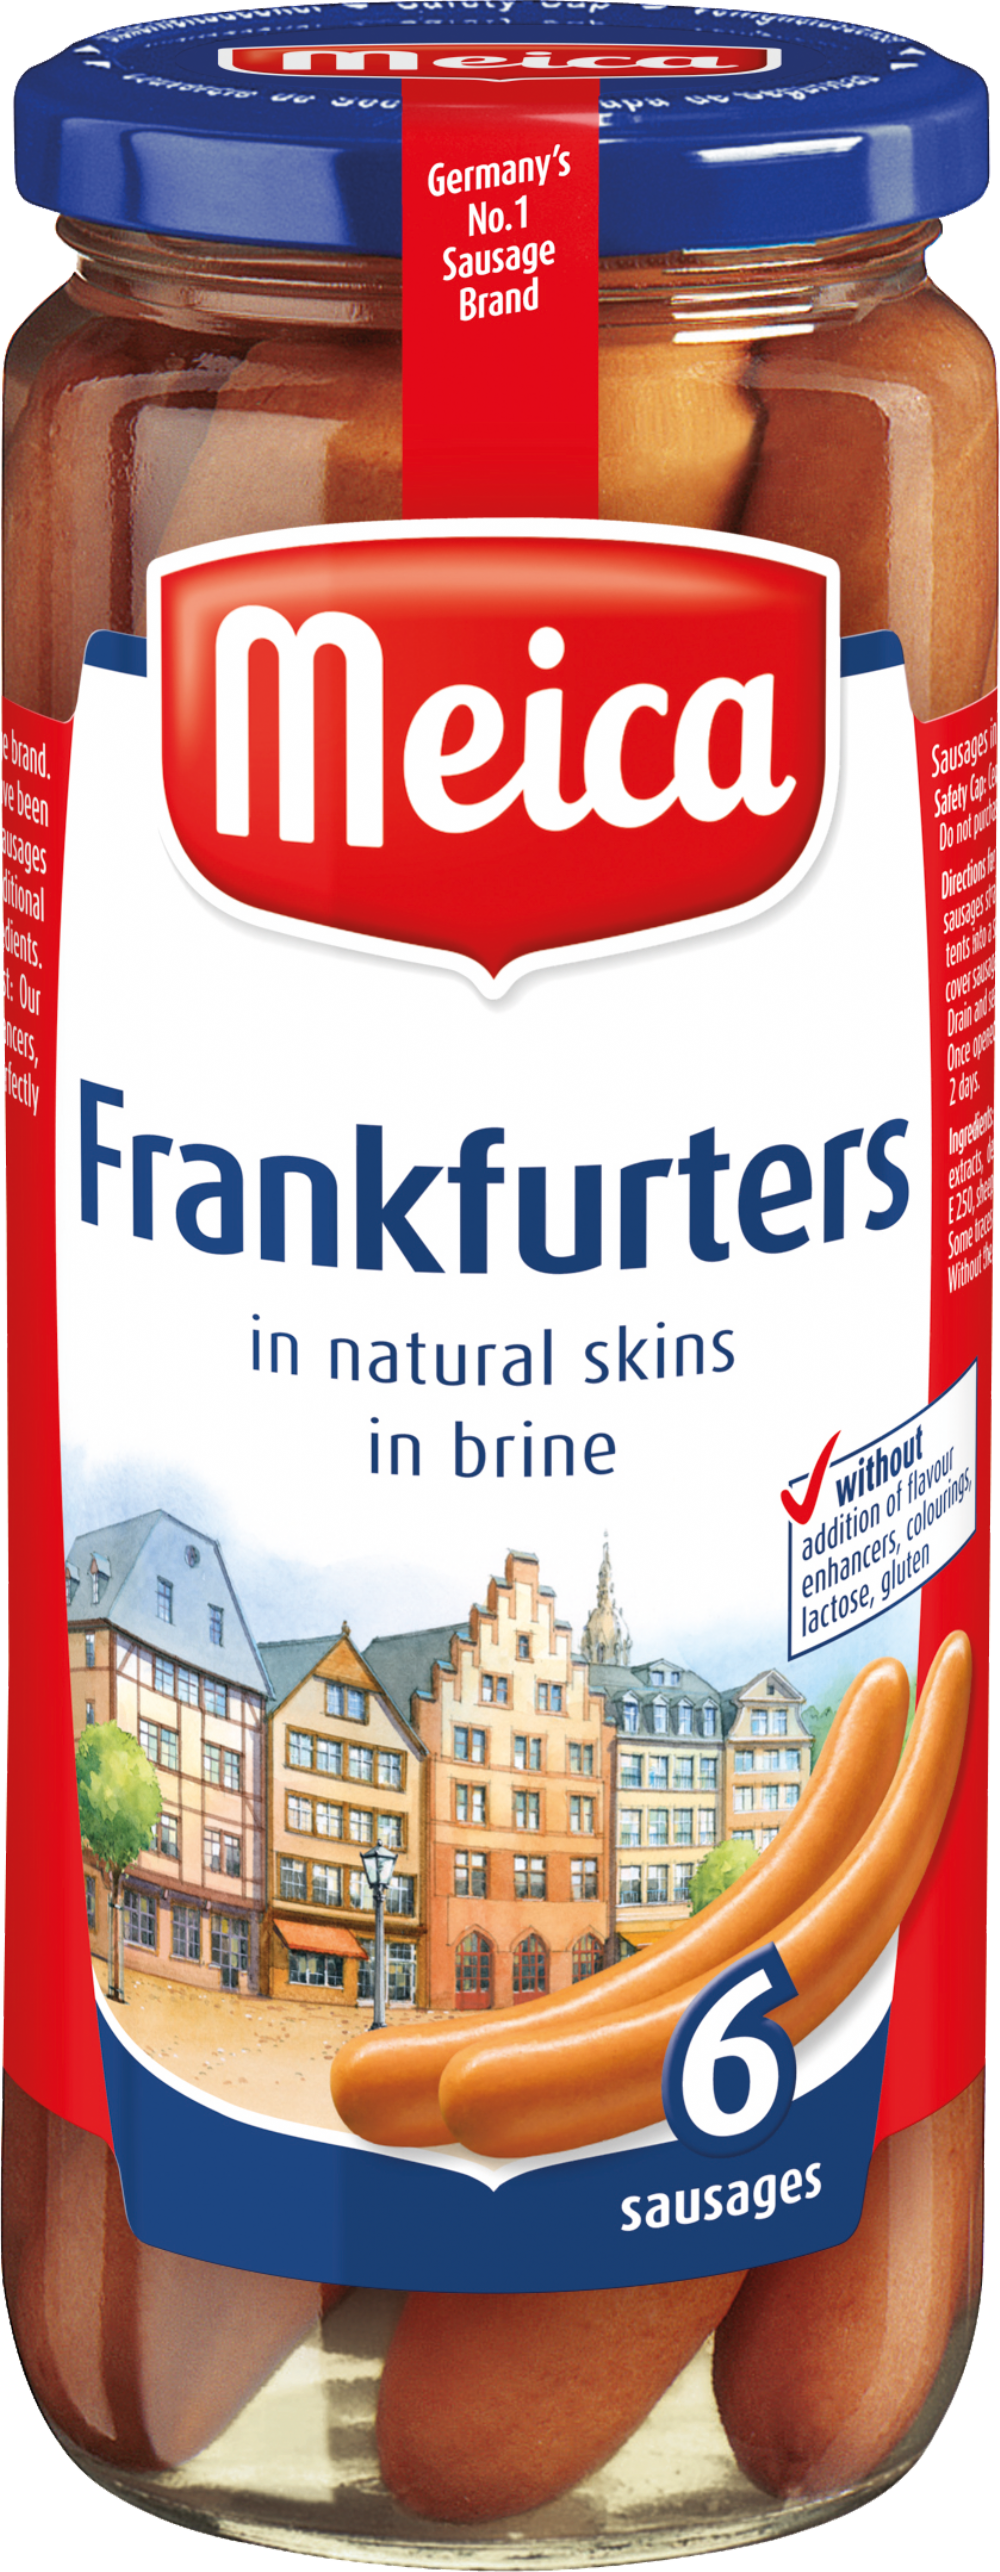 MEICA Frankfurters in Brine 150g